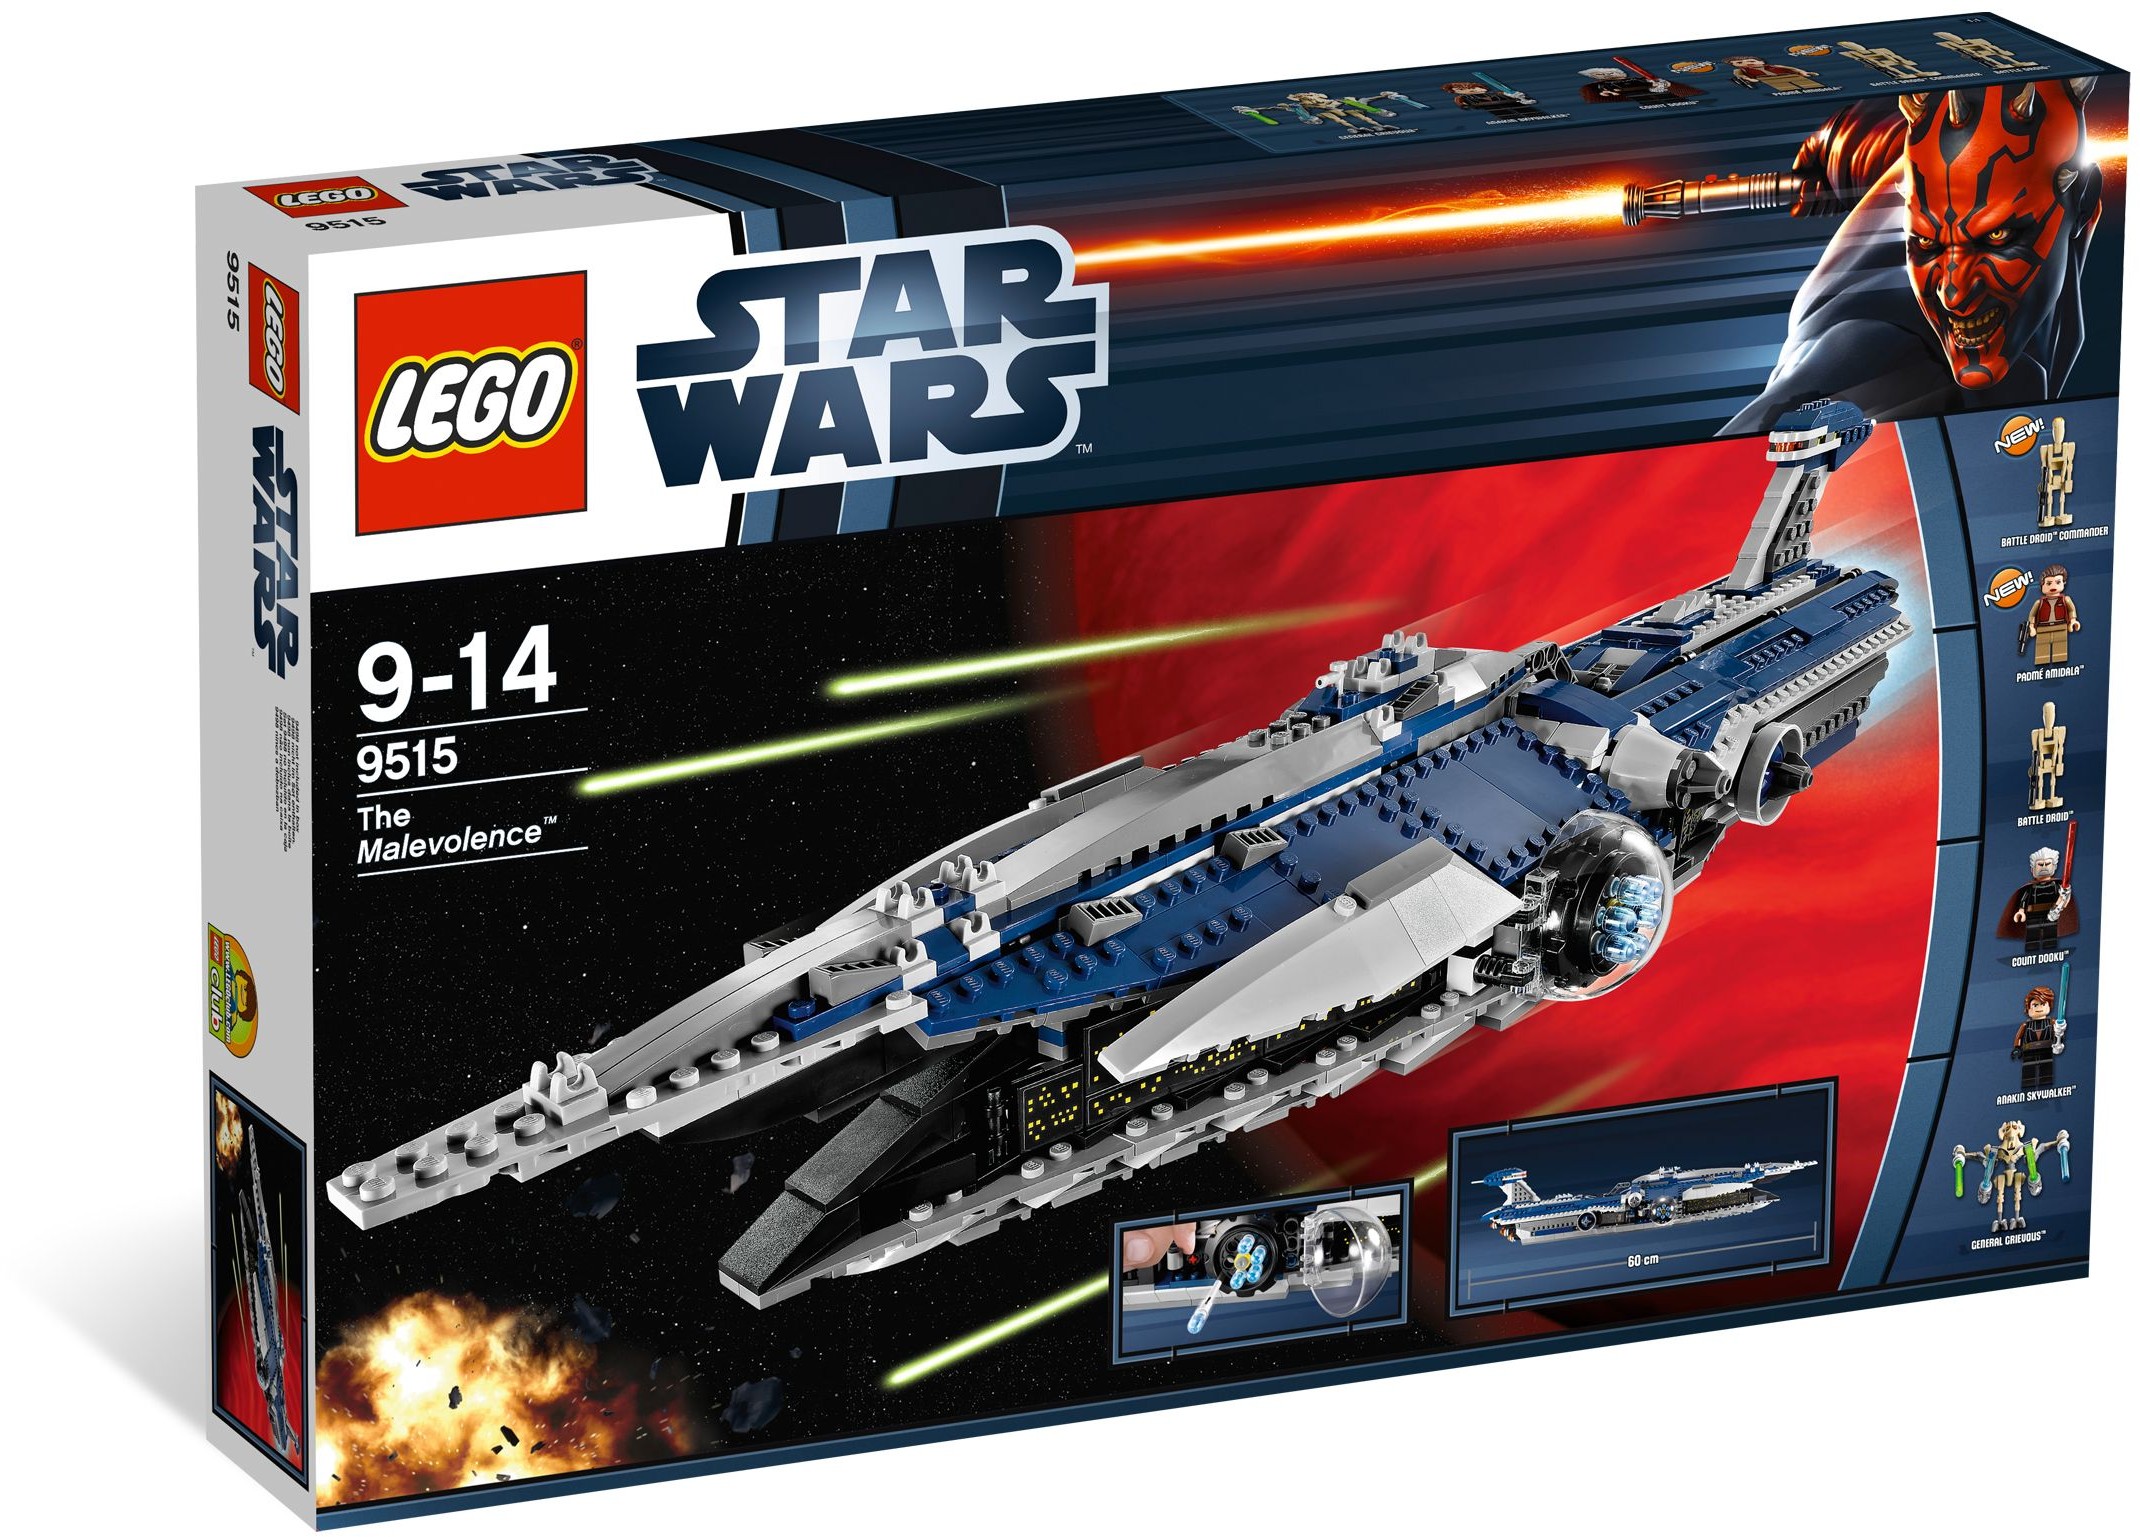 sw0254 Lego Star Wars aus Set 9515 #2700 General Grievous 